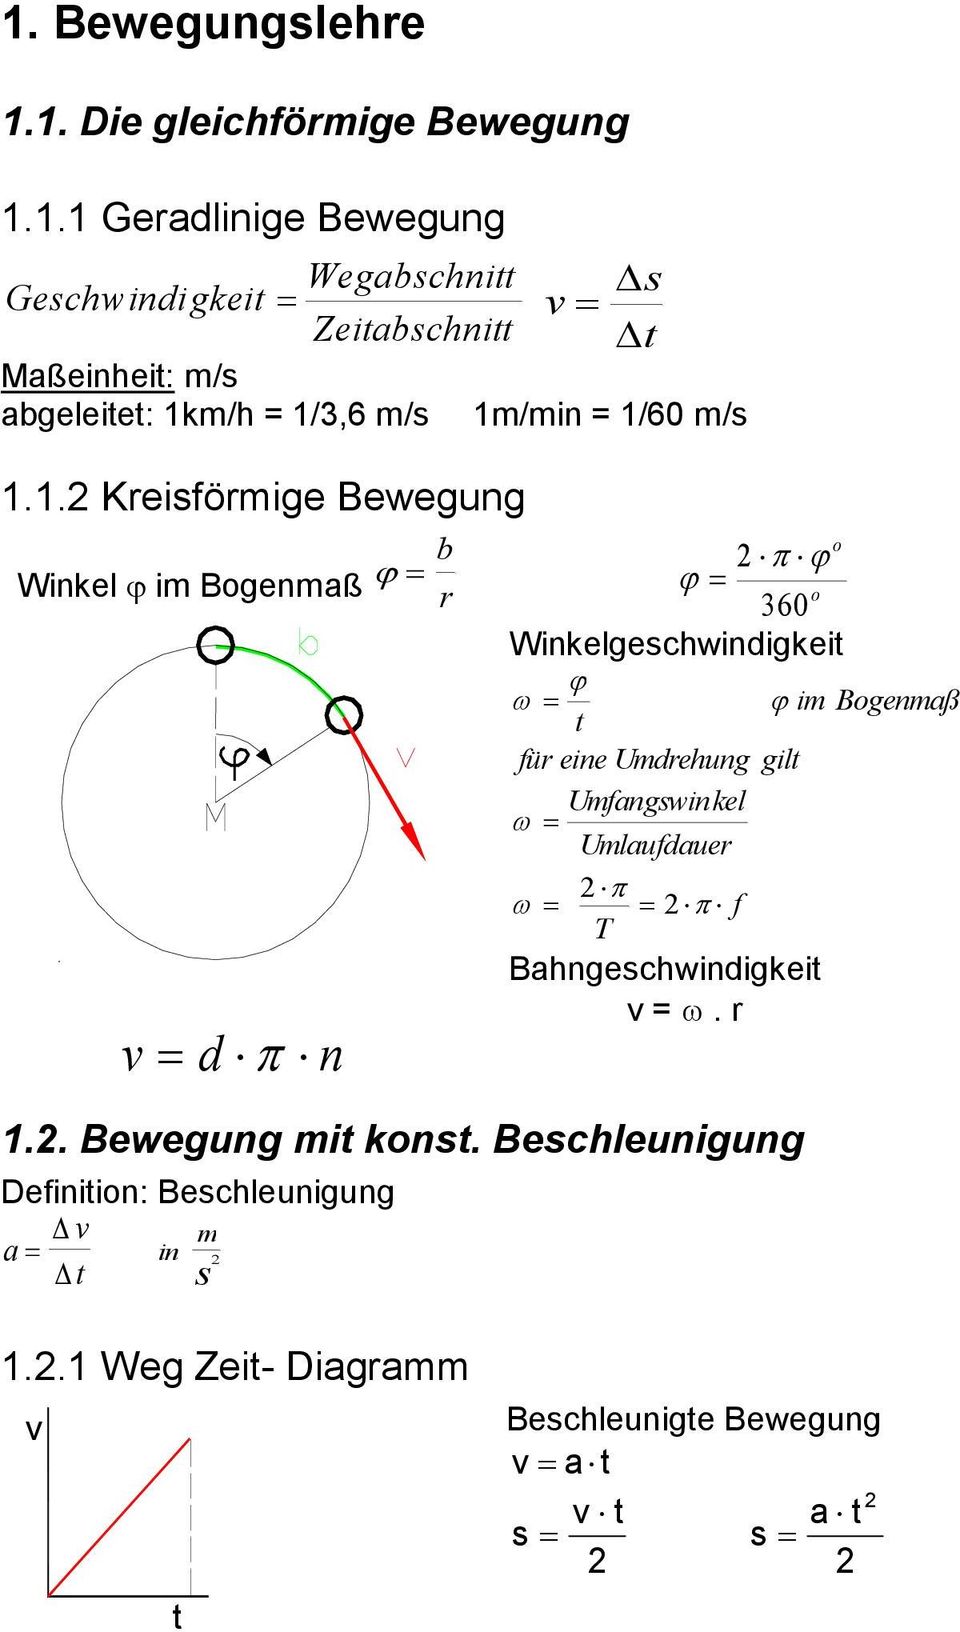 . Kreiförie Beeun Winkel ϕ i Boenaß ϕ b r dπ n π ϕ ϕ o o 360 Winkelechindikei ω ϕ ϕ i Boenaß